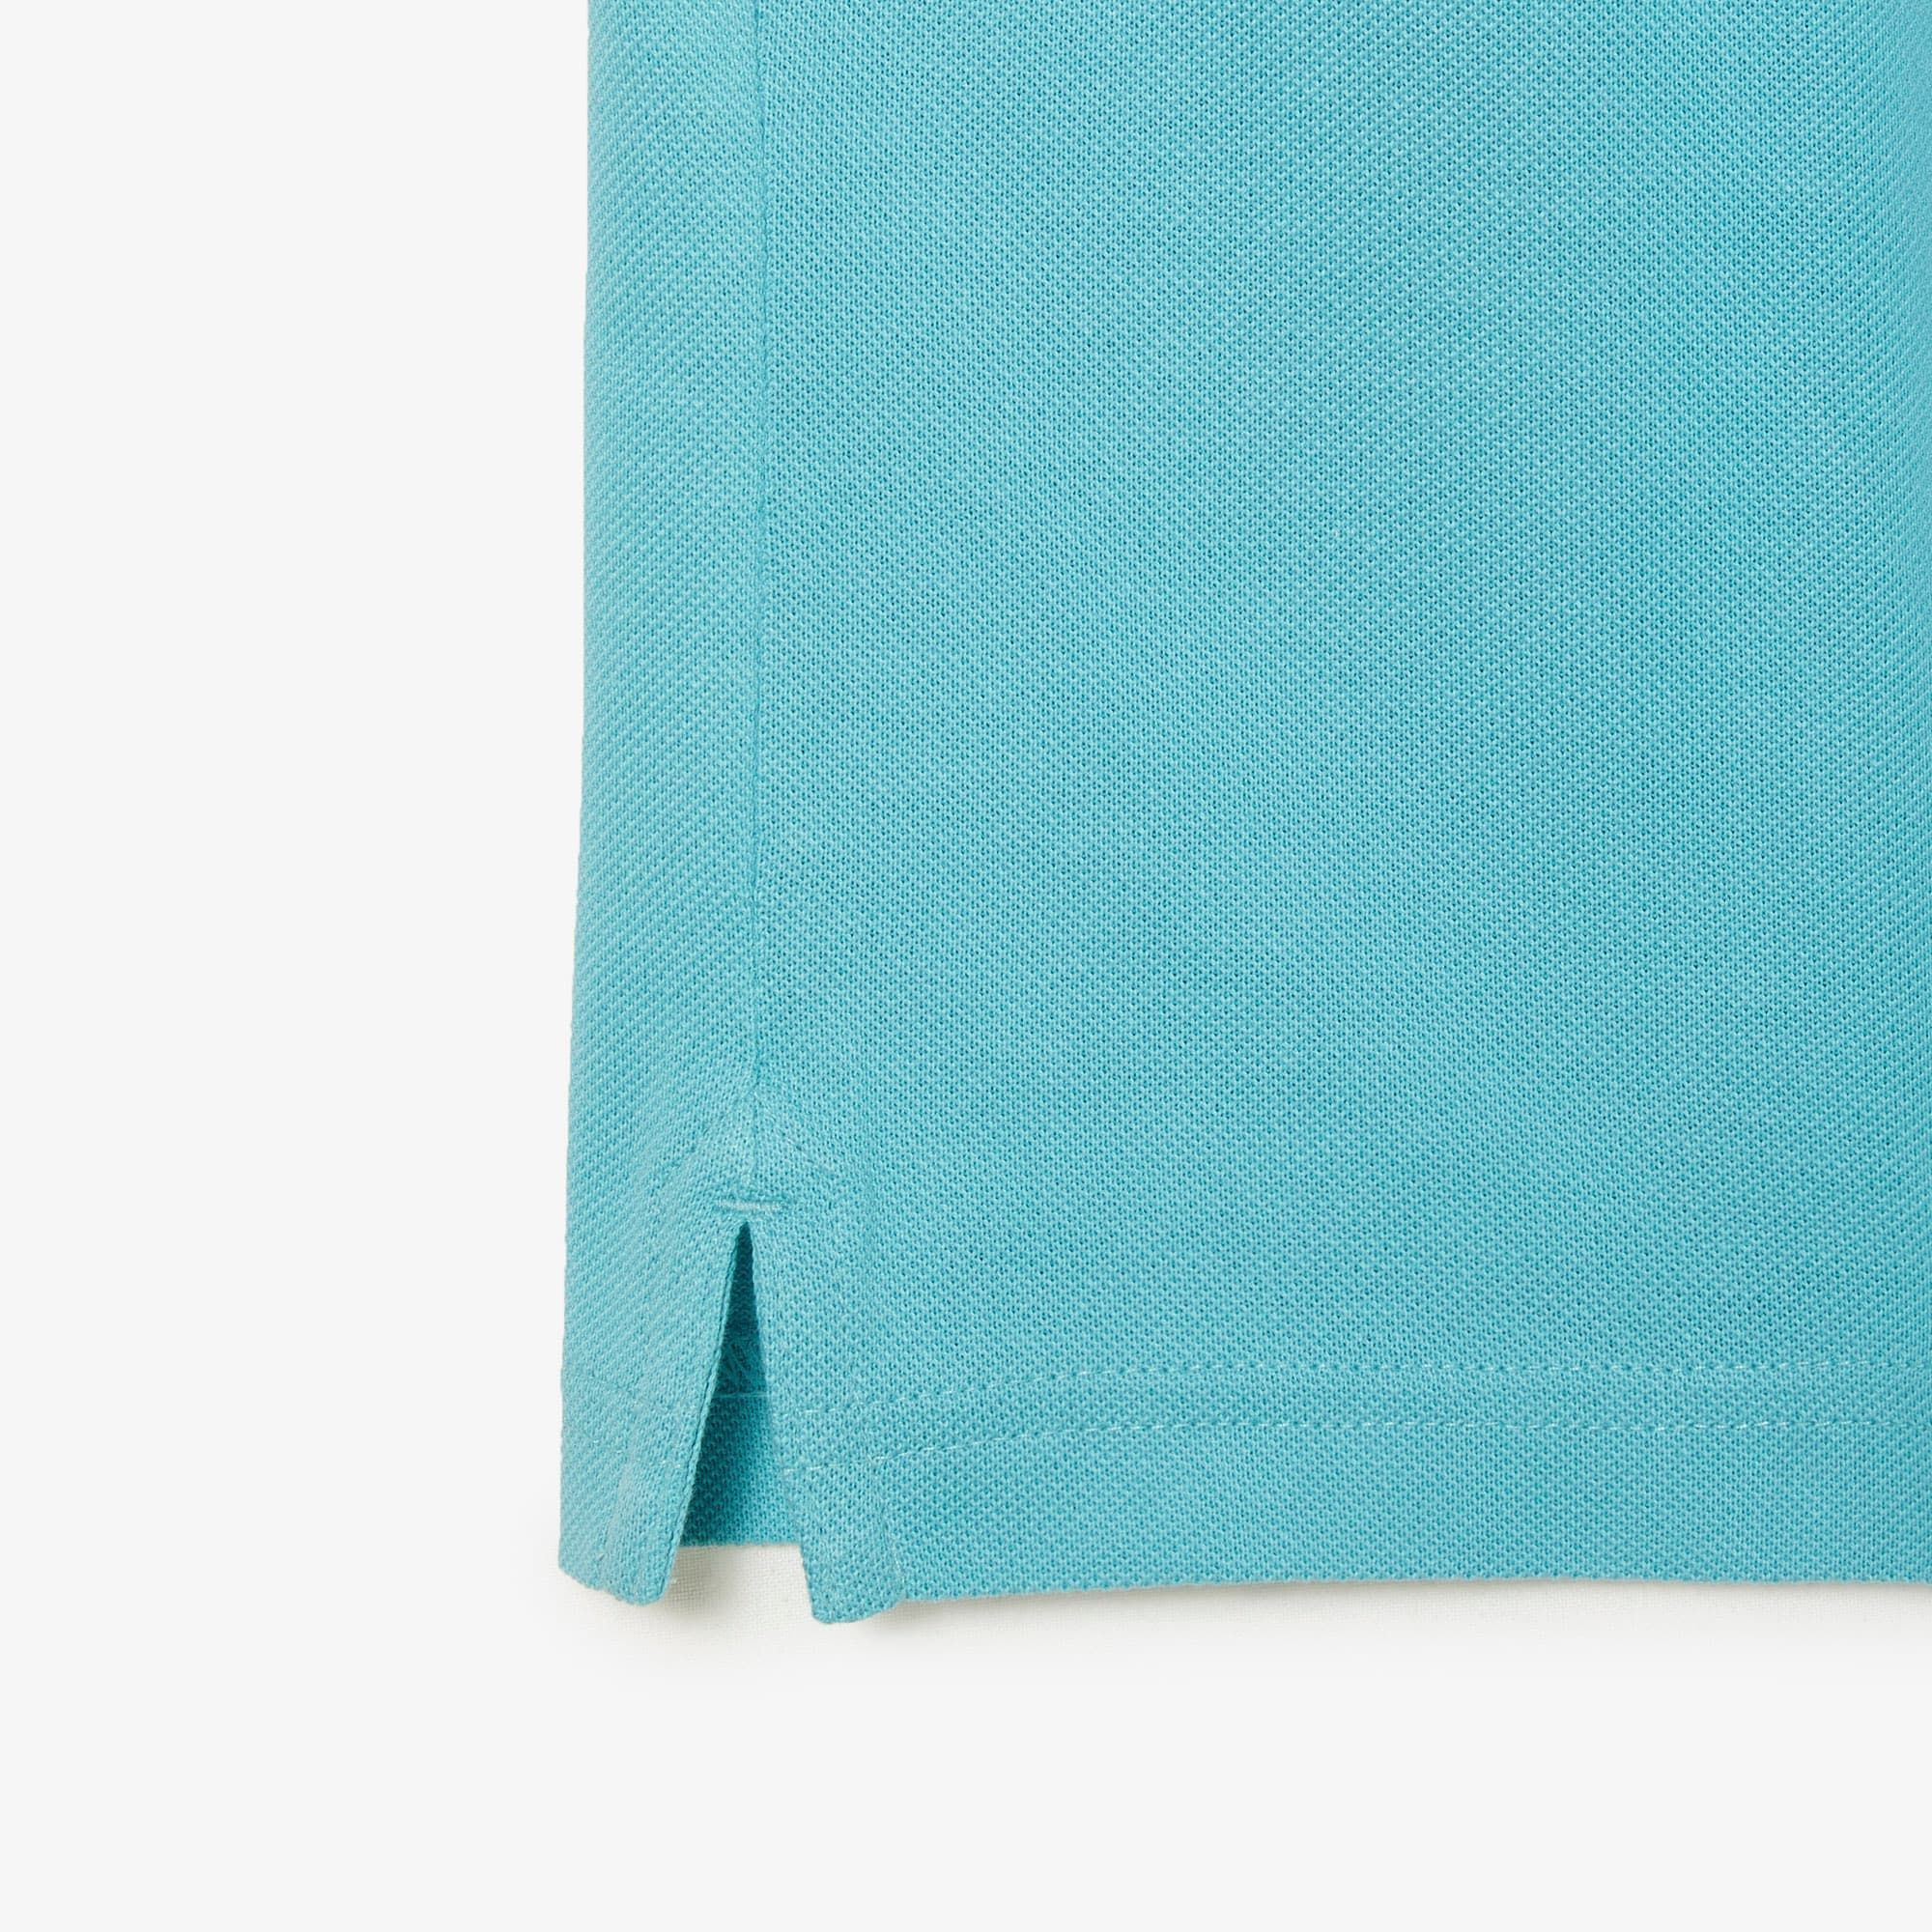  Lacoste Slim Fit Petit Piqué Polo Shirt - Light Turquoise 